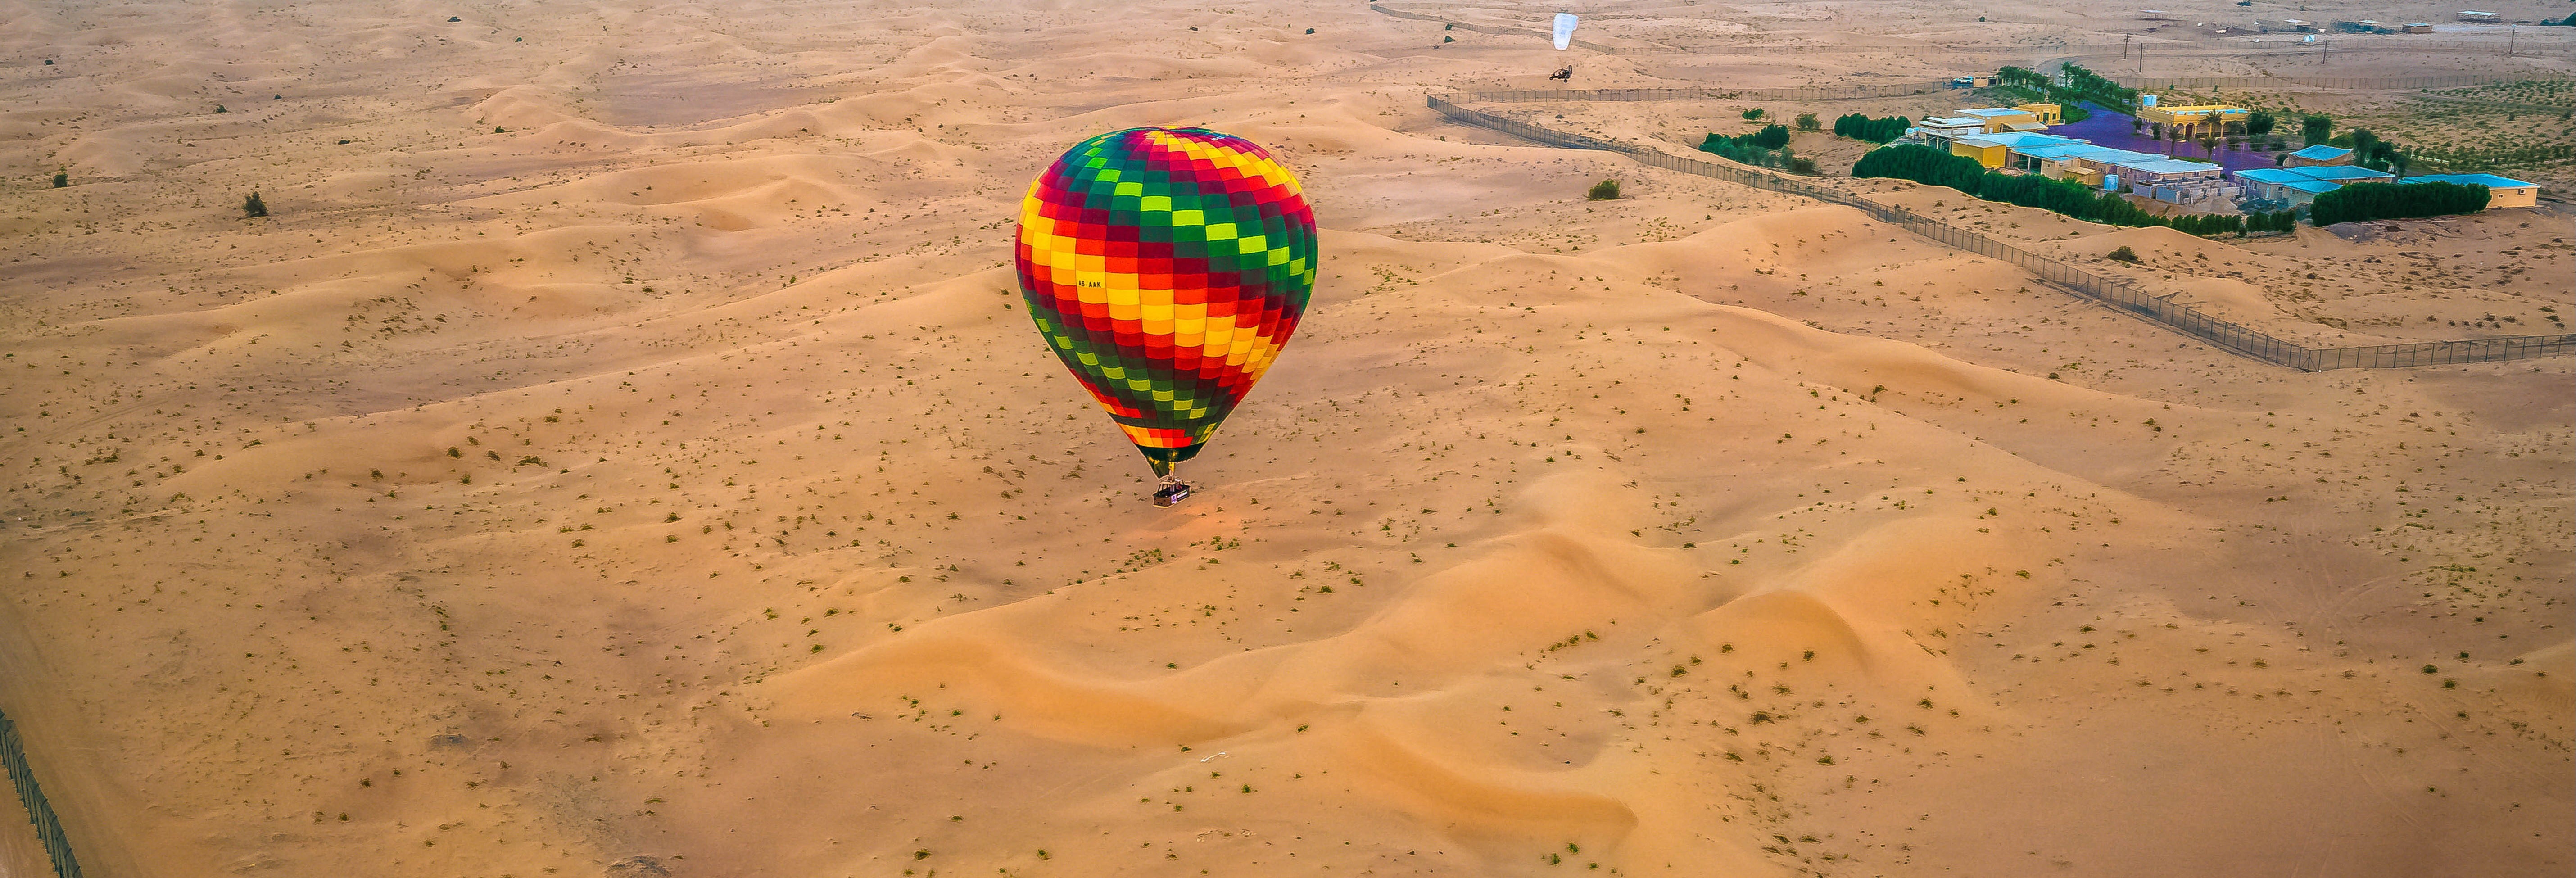 Passeio de balão por Dubai